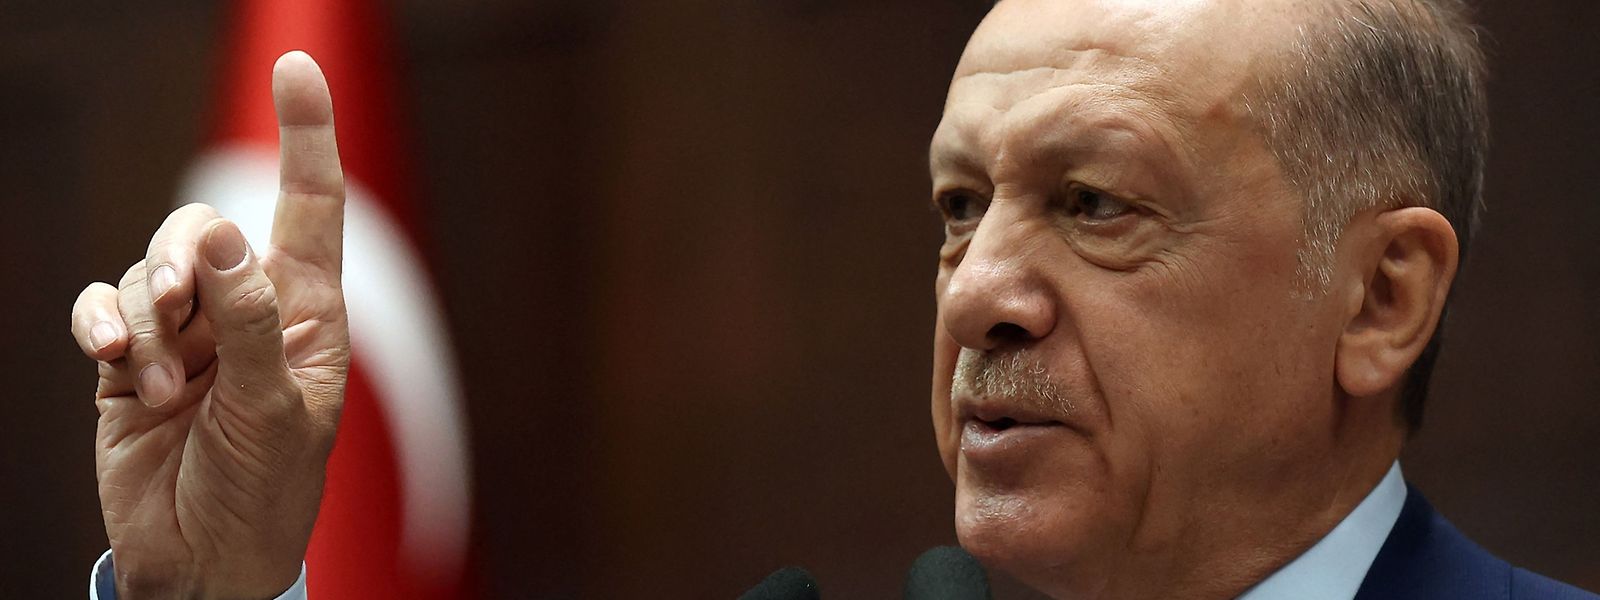 O presidente turco tem mostrado oposição à adesão dos dois países nórdicos